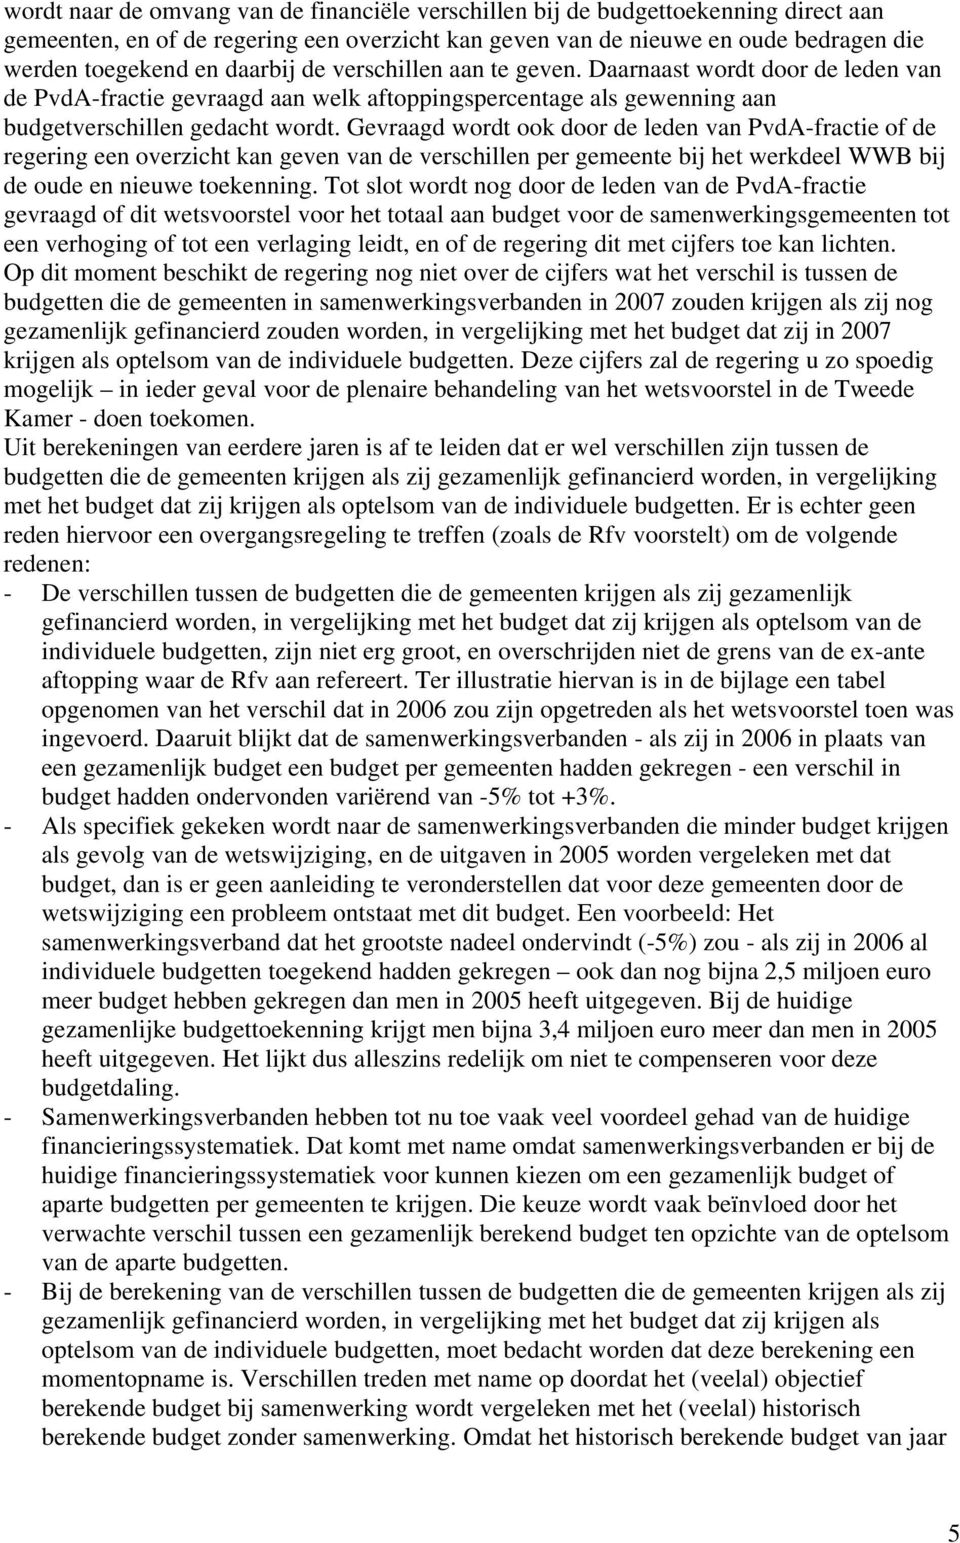 Gevraagd wordt ook door de leden van PvdA-fractie of de regering een overzicht kan geven van de verschillen per gemeente bij het werkdeel WWB bij de oude en nieuwe toekenning.